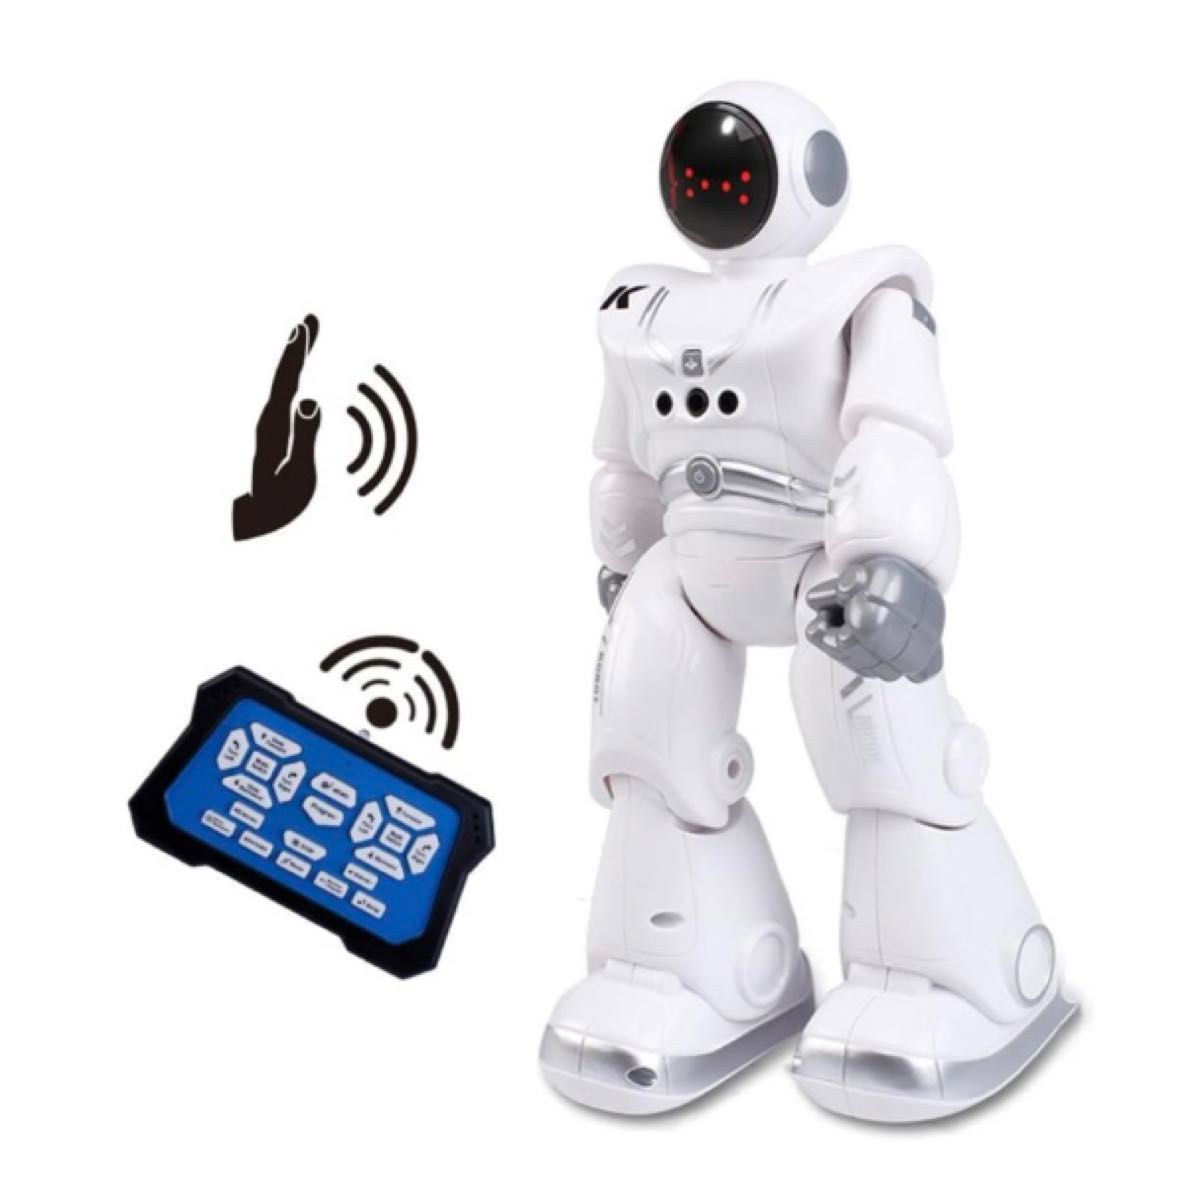 人型ロボット ロボット おもちゃ 歩く 英語おっしゃべり 子供 おもちゃ 男の子 誕生日プレゼント 知育玩具 充電式 日本語説明書